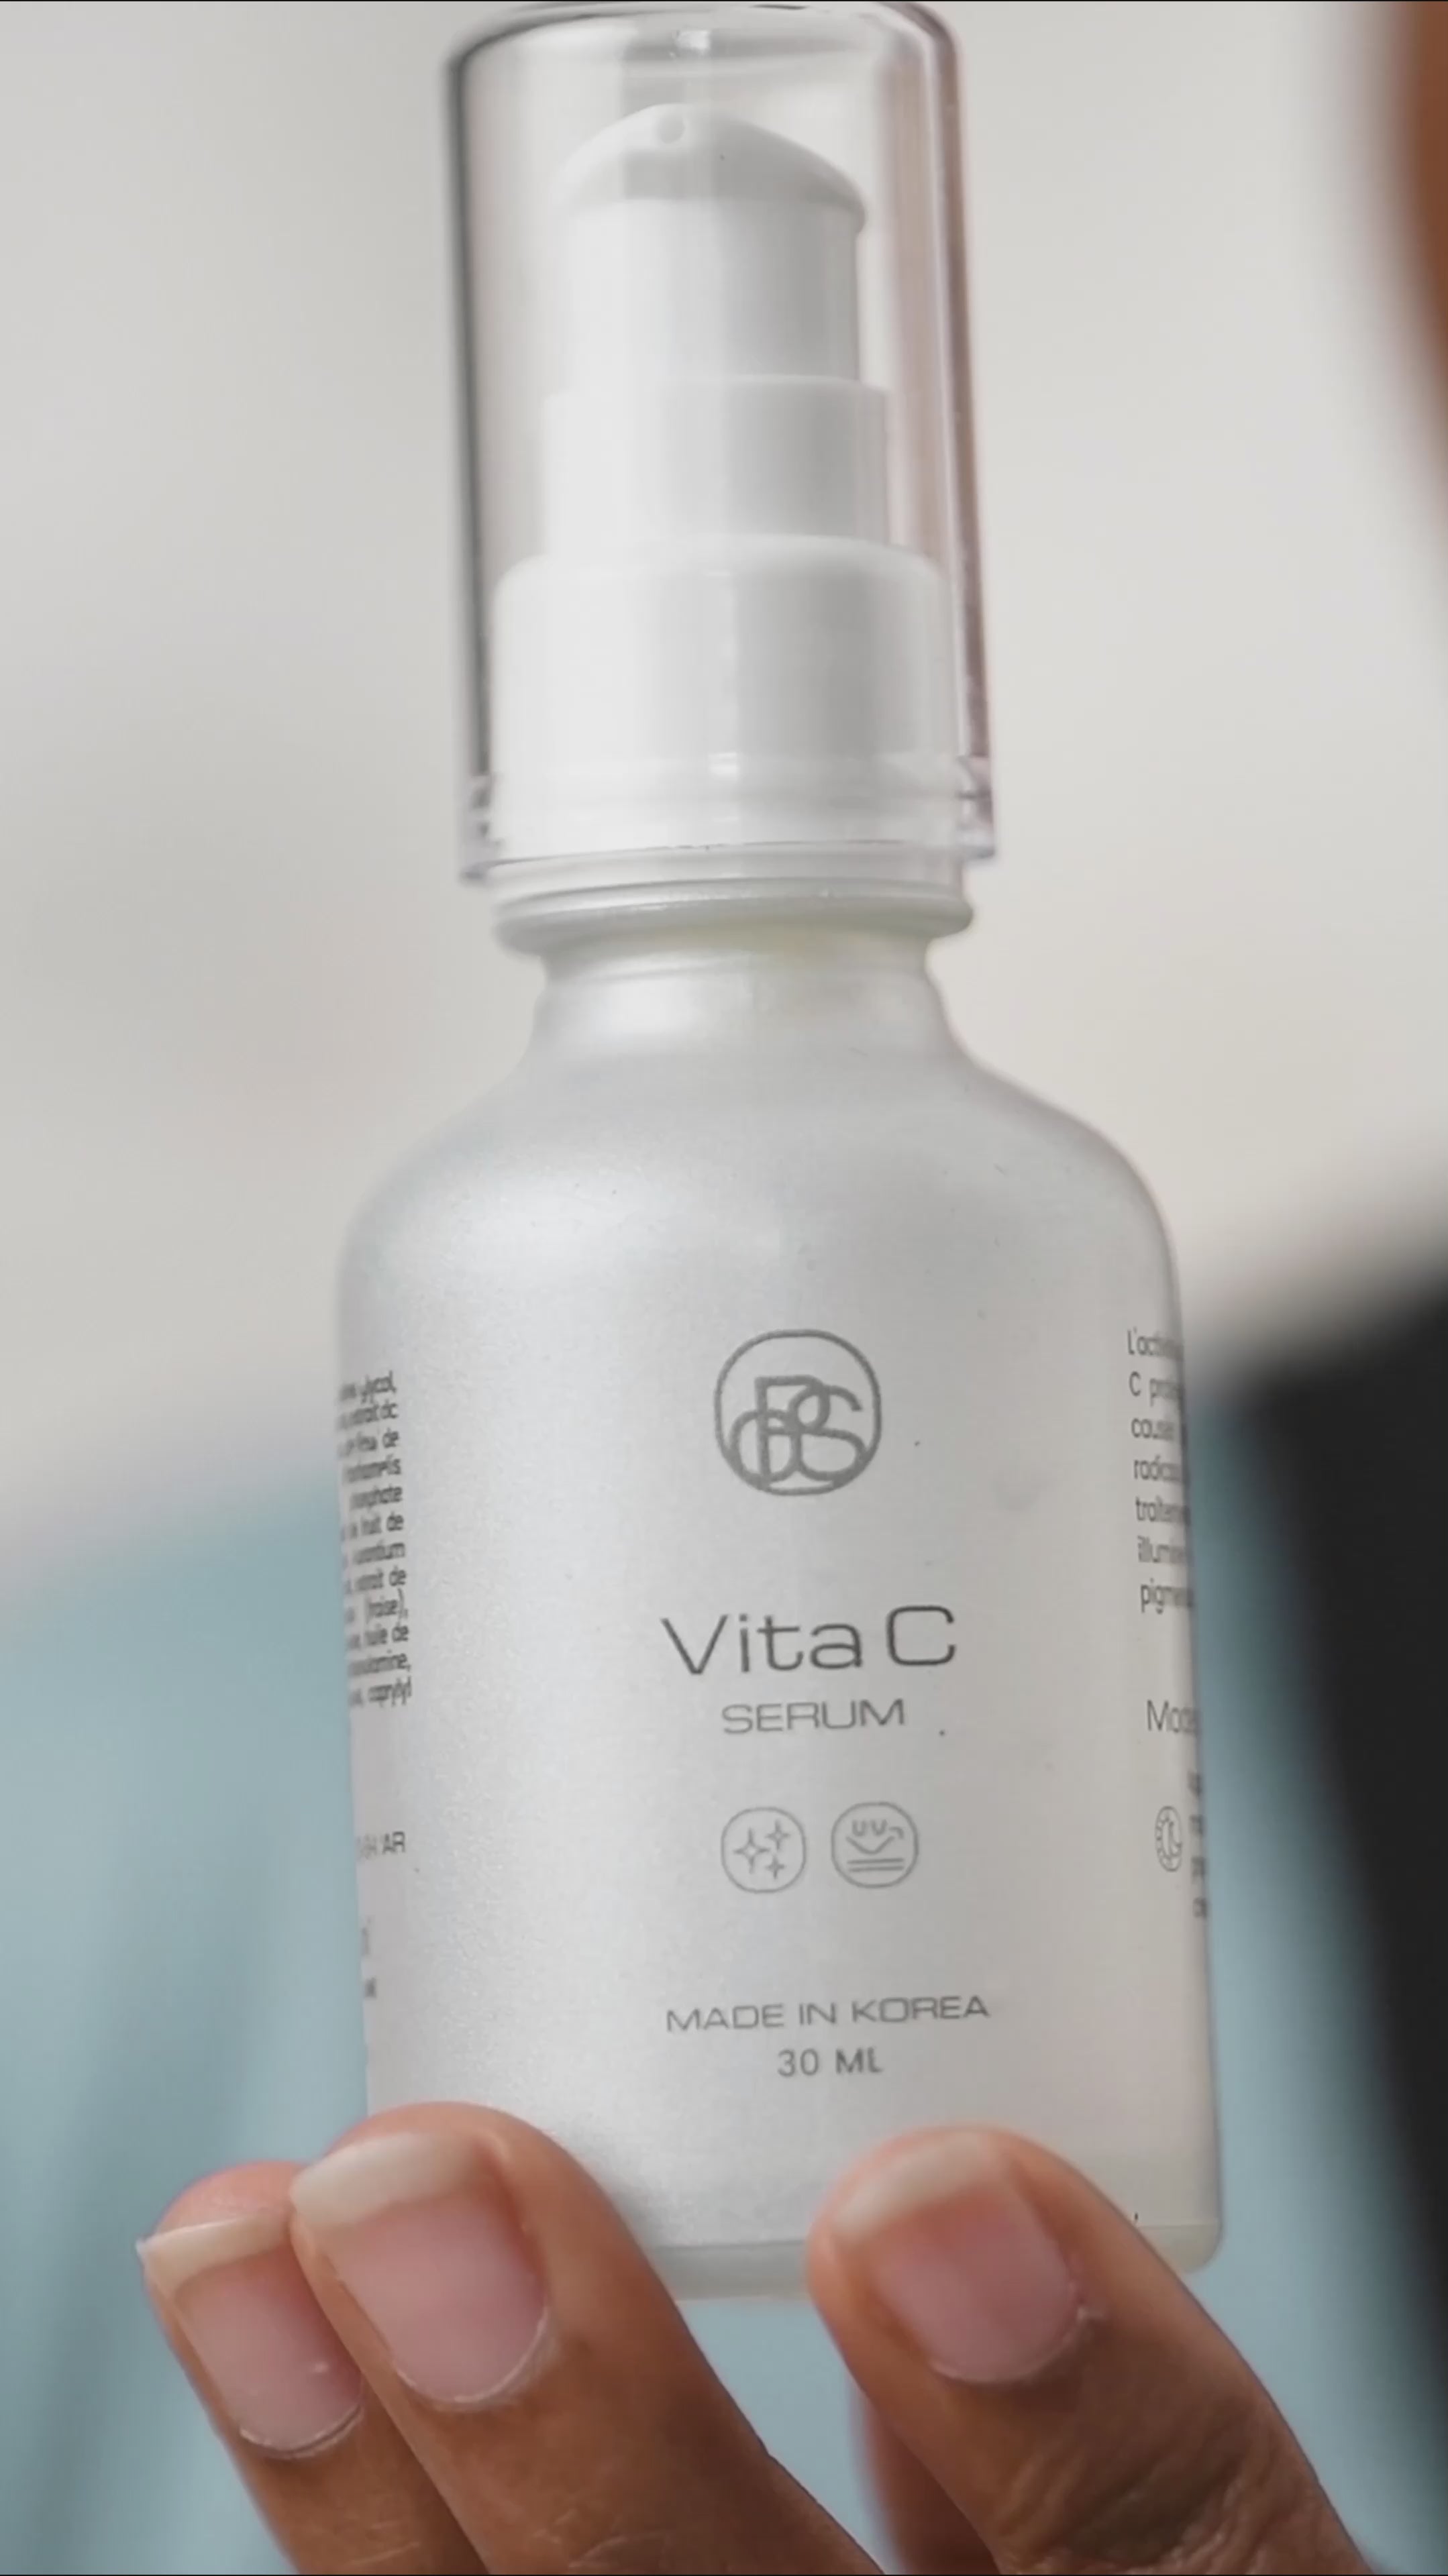 Vita C serum